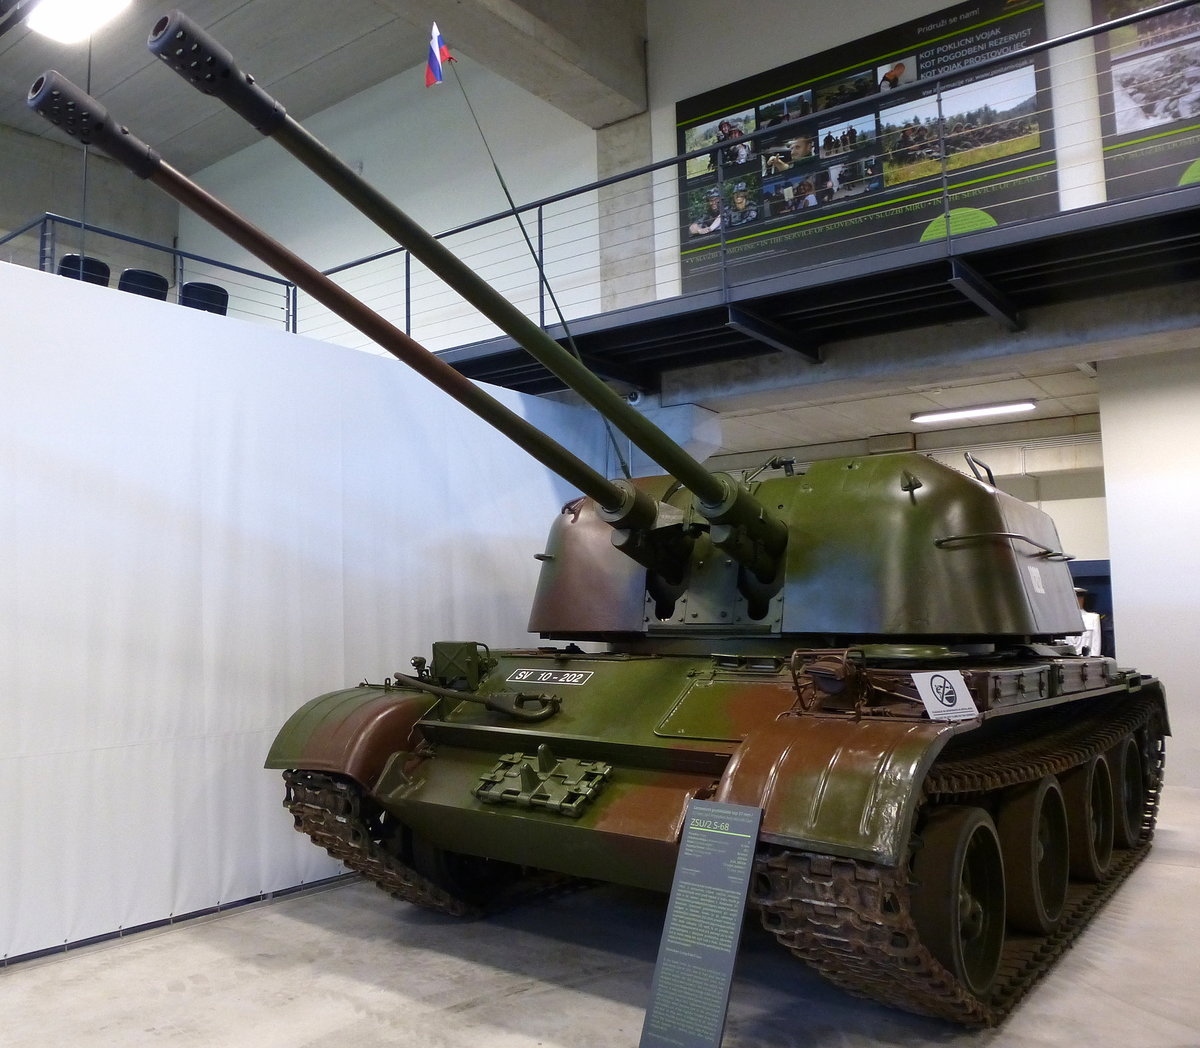 ZSU/2 S-68, Flakpanzer aus sowjetischer Produktion, 12-Zyl.Diesel mit 530PS, Vmax.50Km/h, Militärmuseum Pivka, Juni 2016